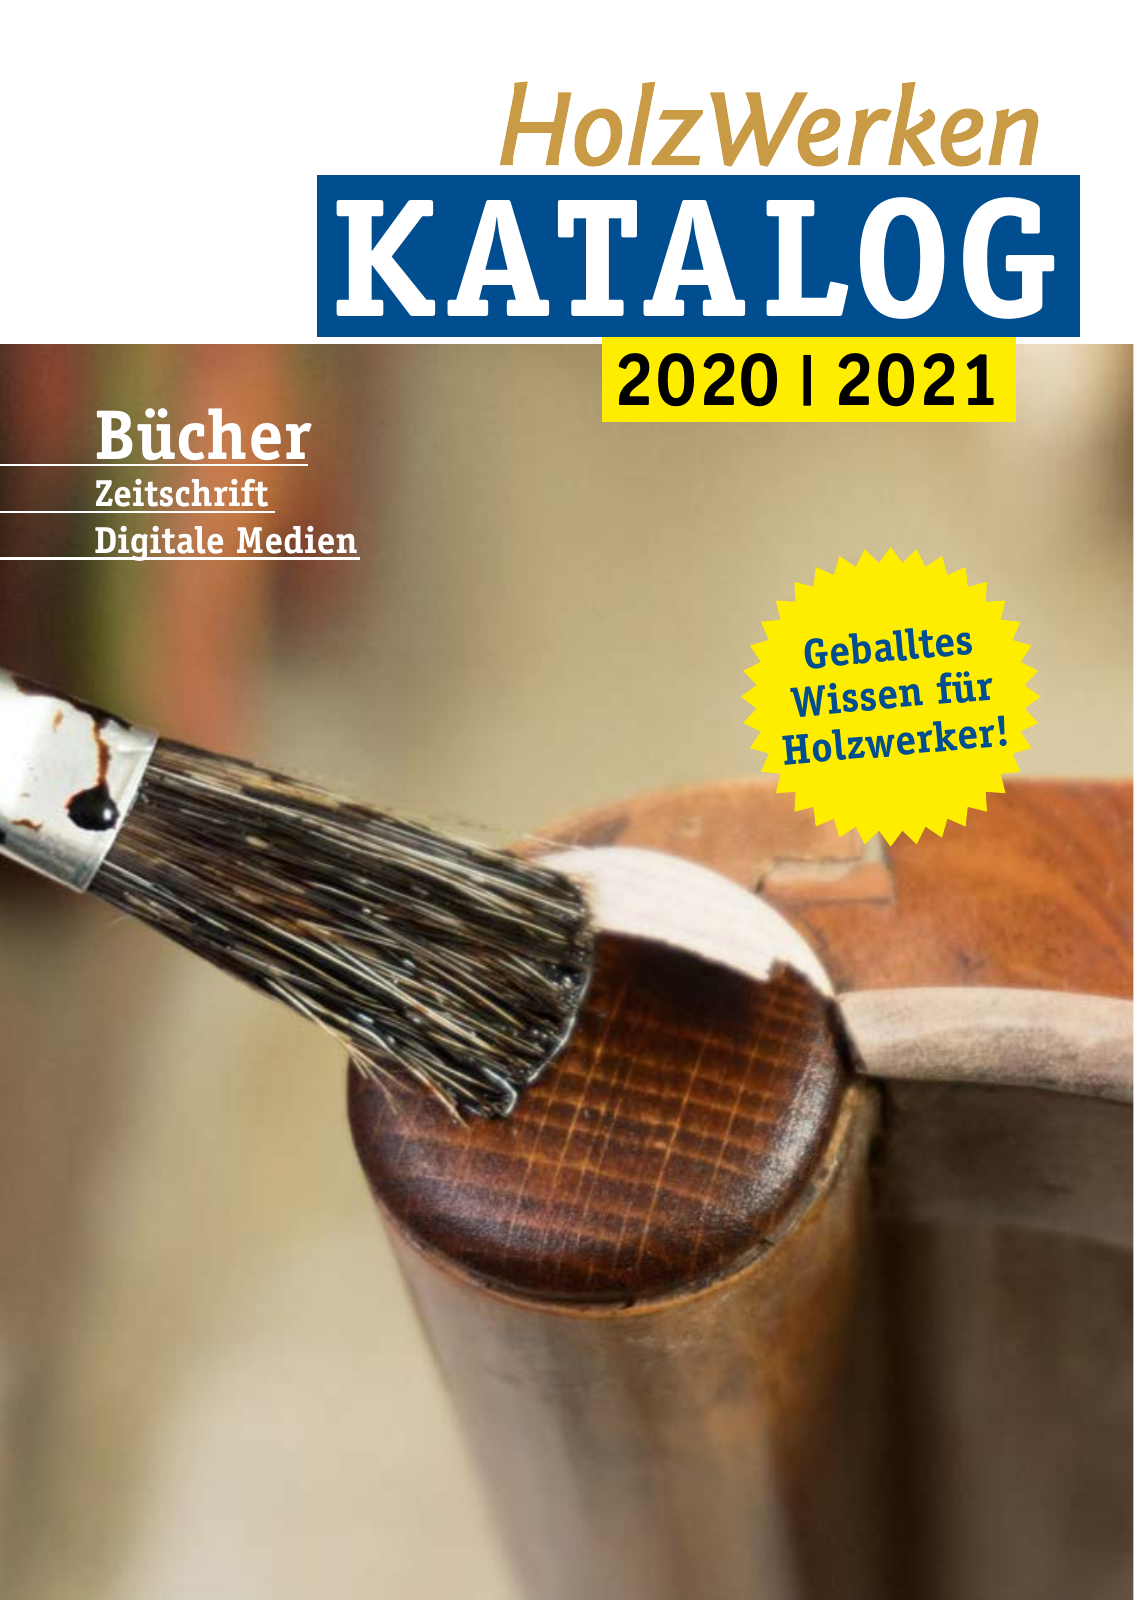 Vorschau HolzWerken Katalog 2021 Seite 1